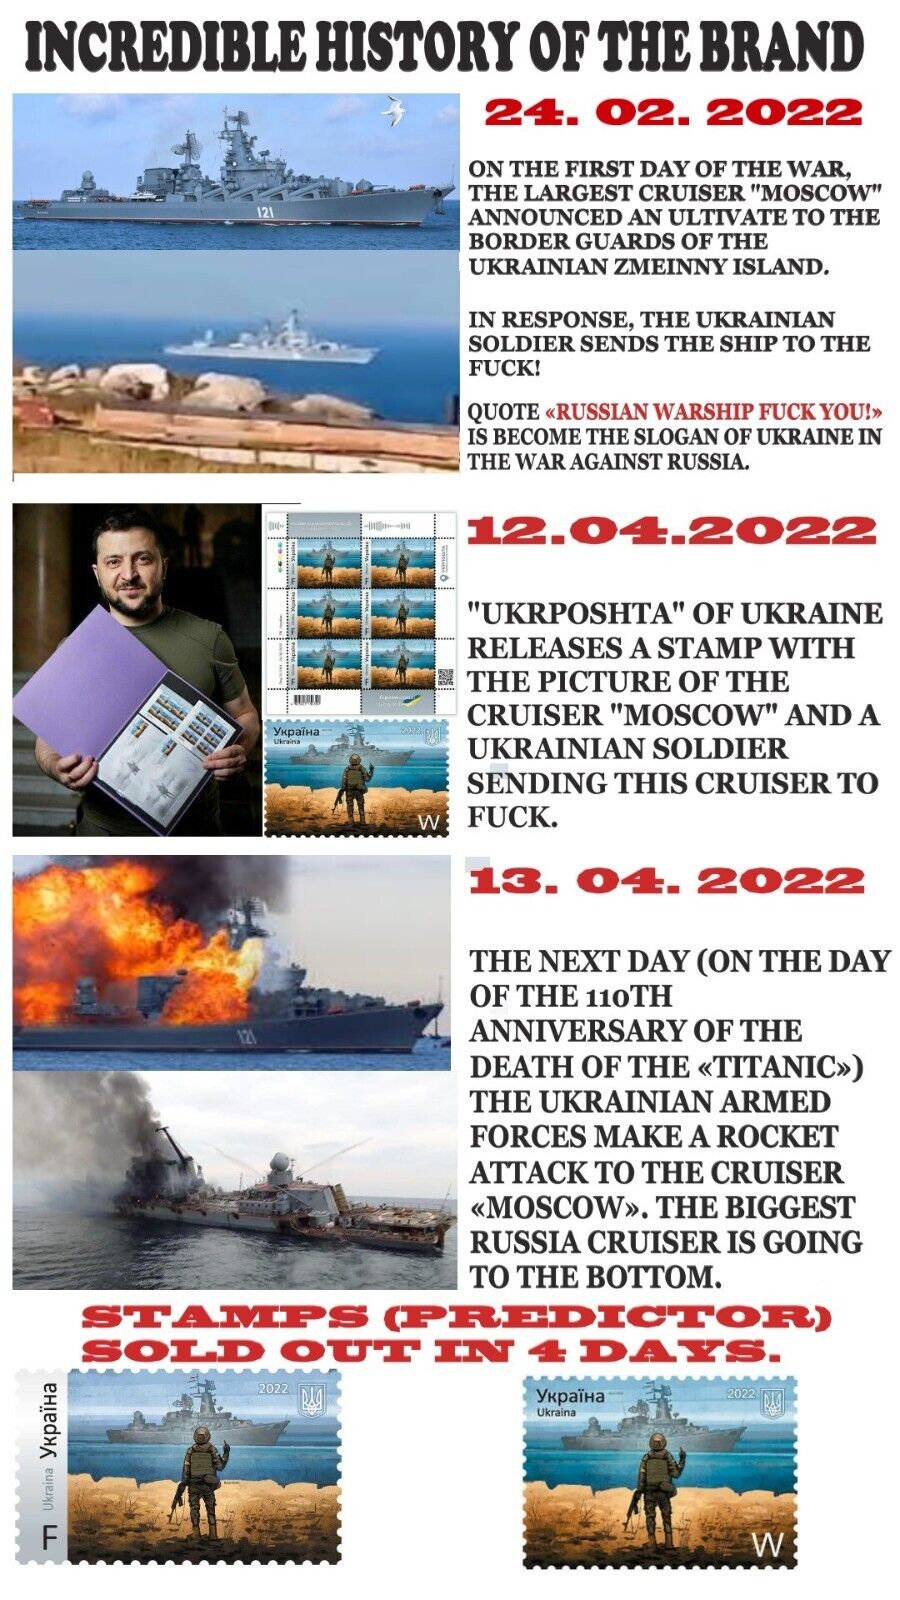 ORIGINAL. WAR IN UKRAINE. Postage Stamp "Russian warship go to ...!" 14.04.2022 Без бренда - фотография #7